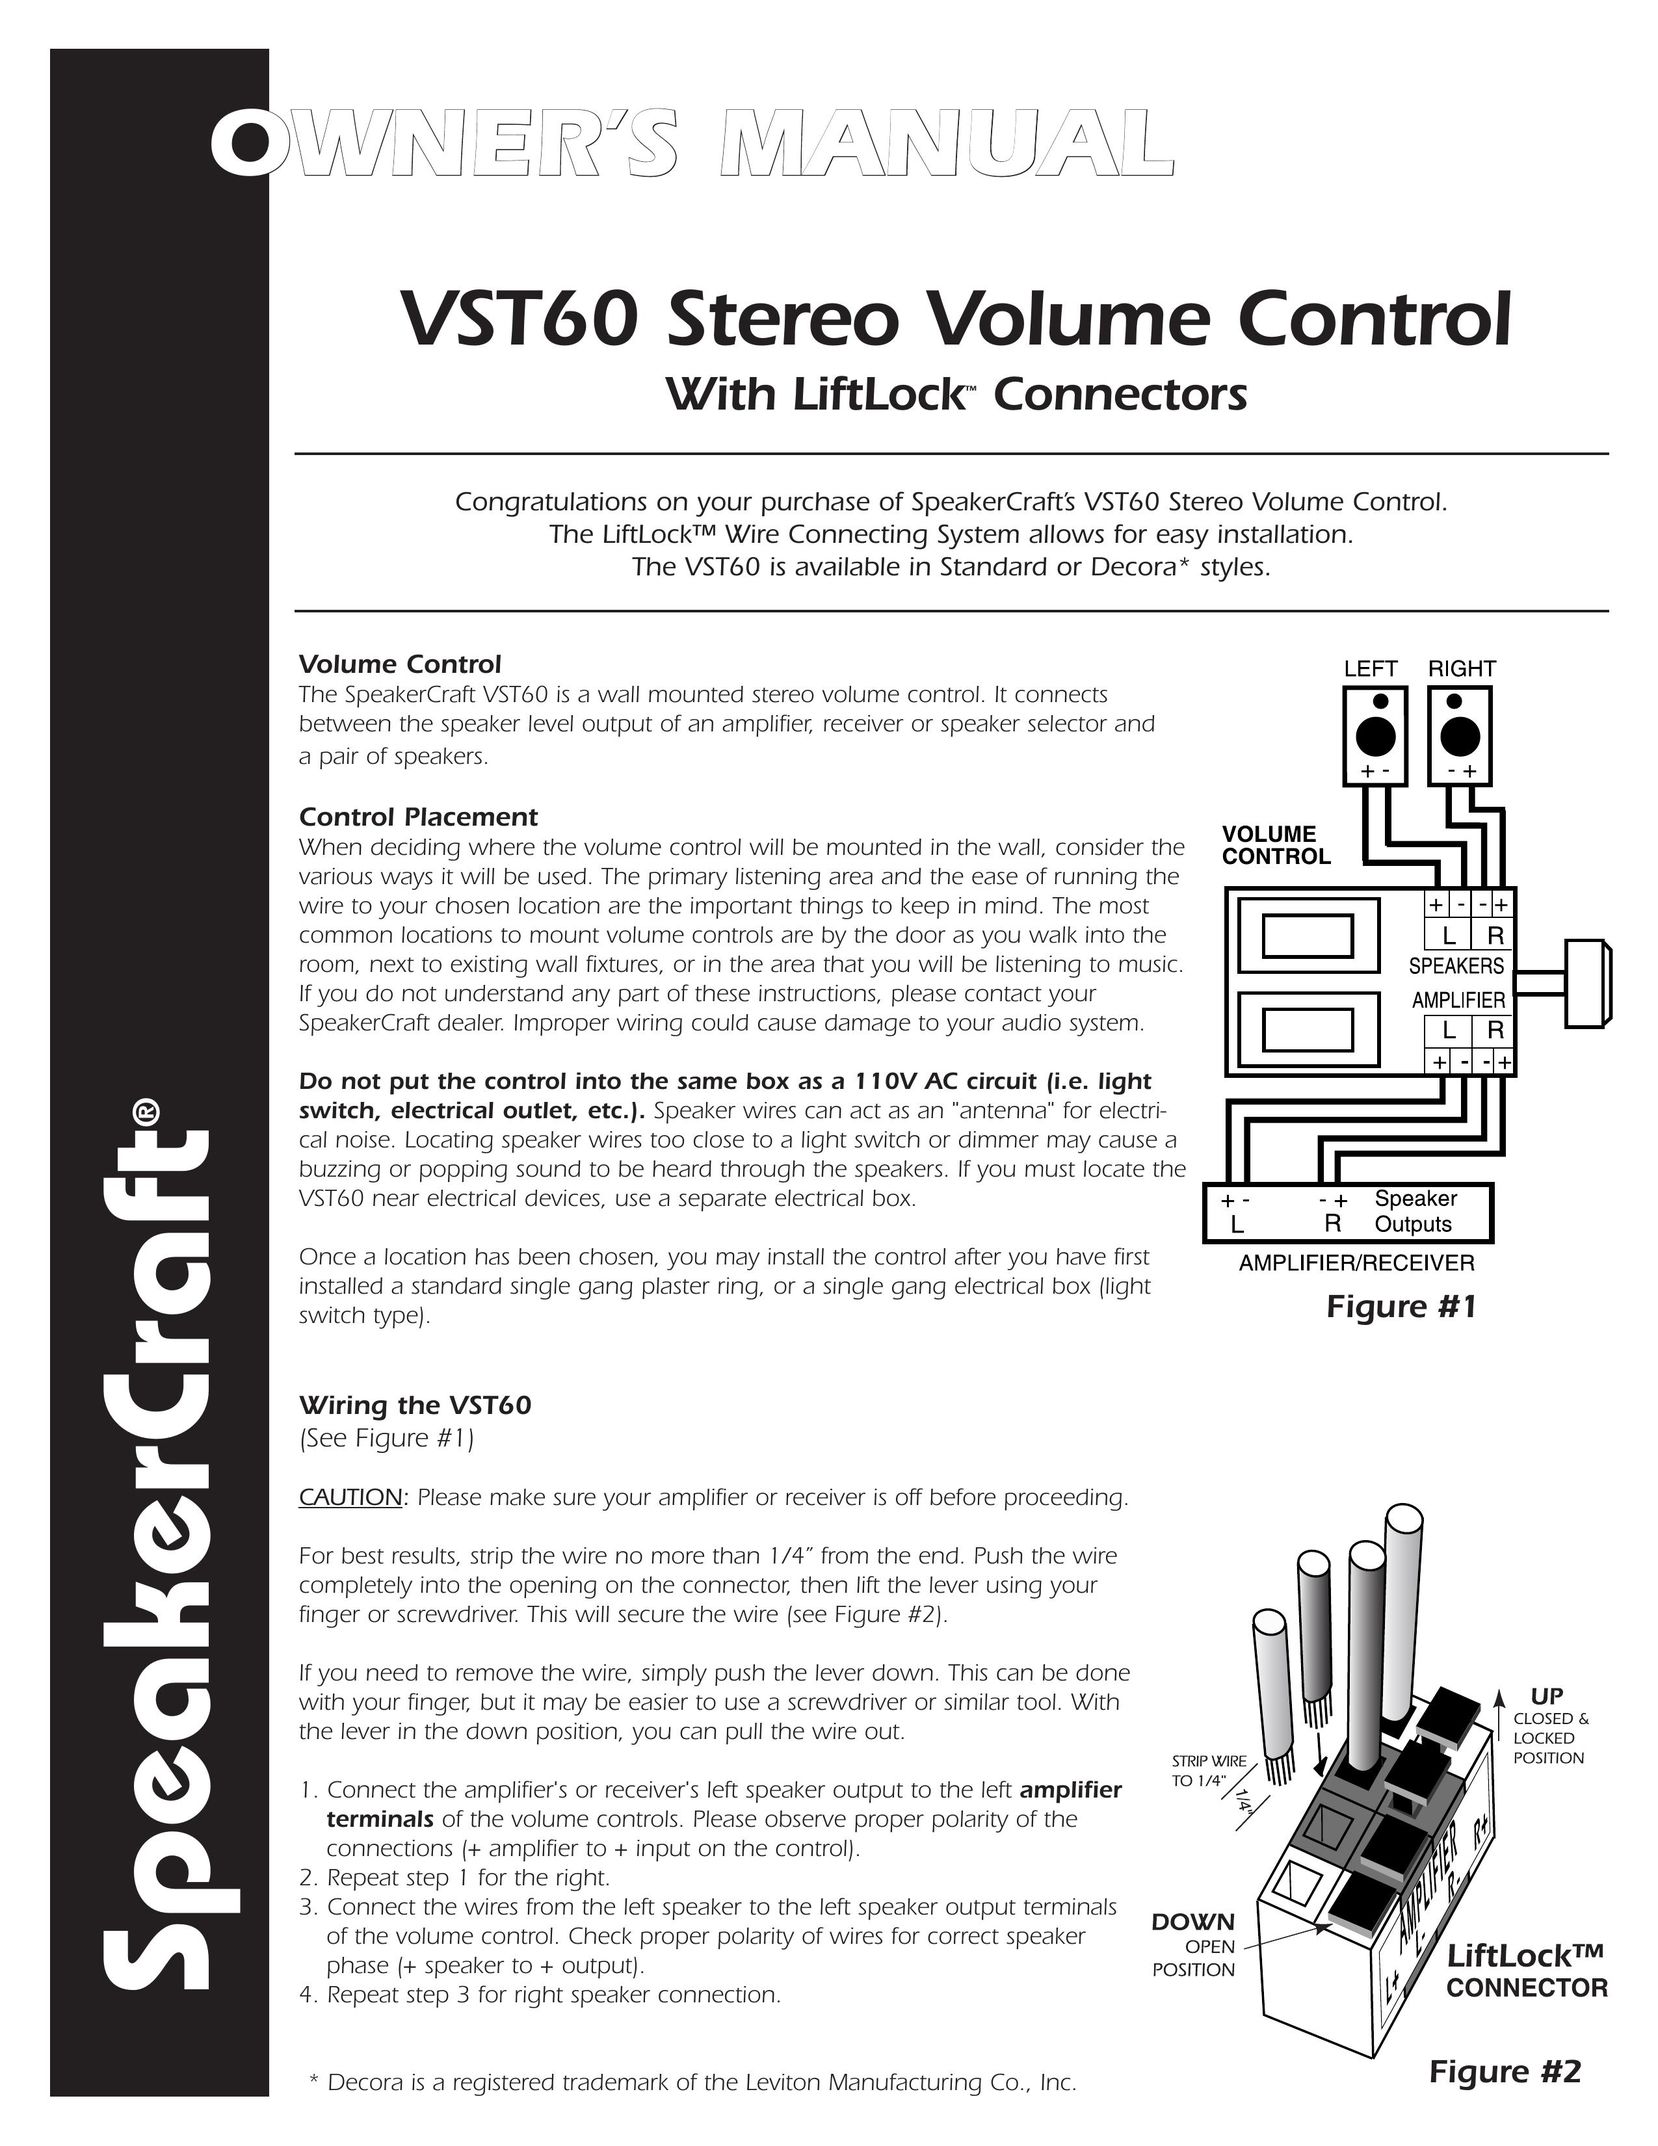 SpeakerCraft VST60 Stereo Amplifier User Manual